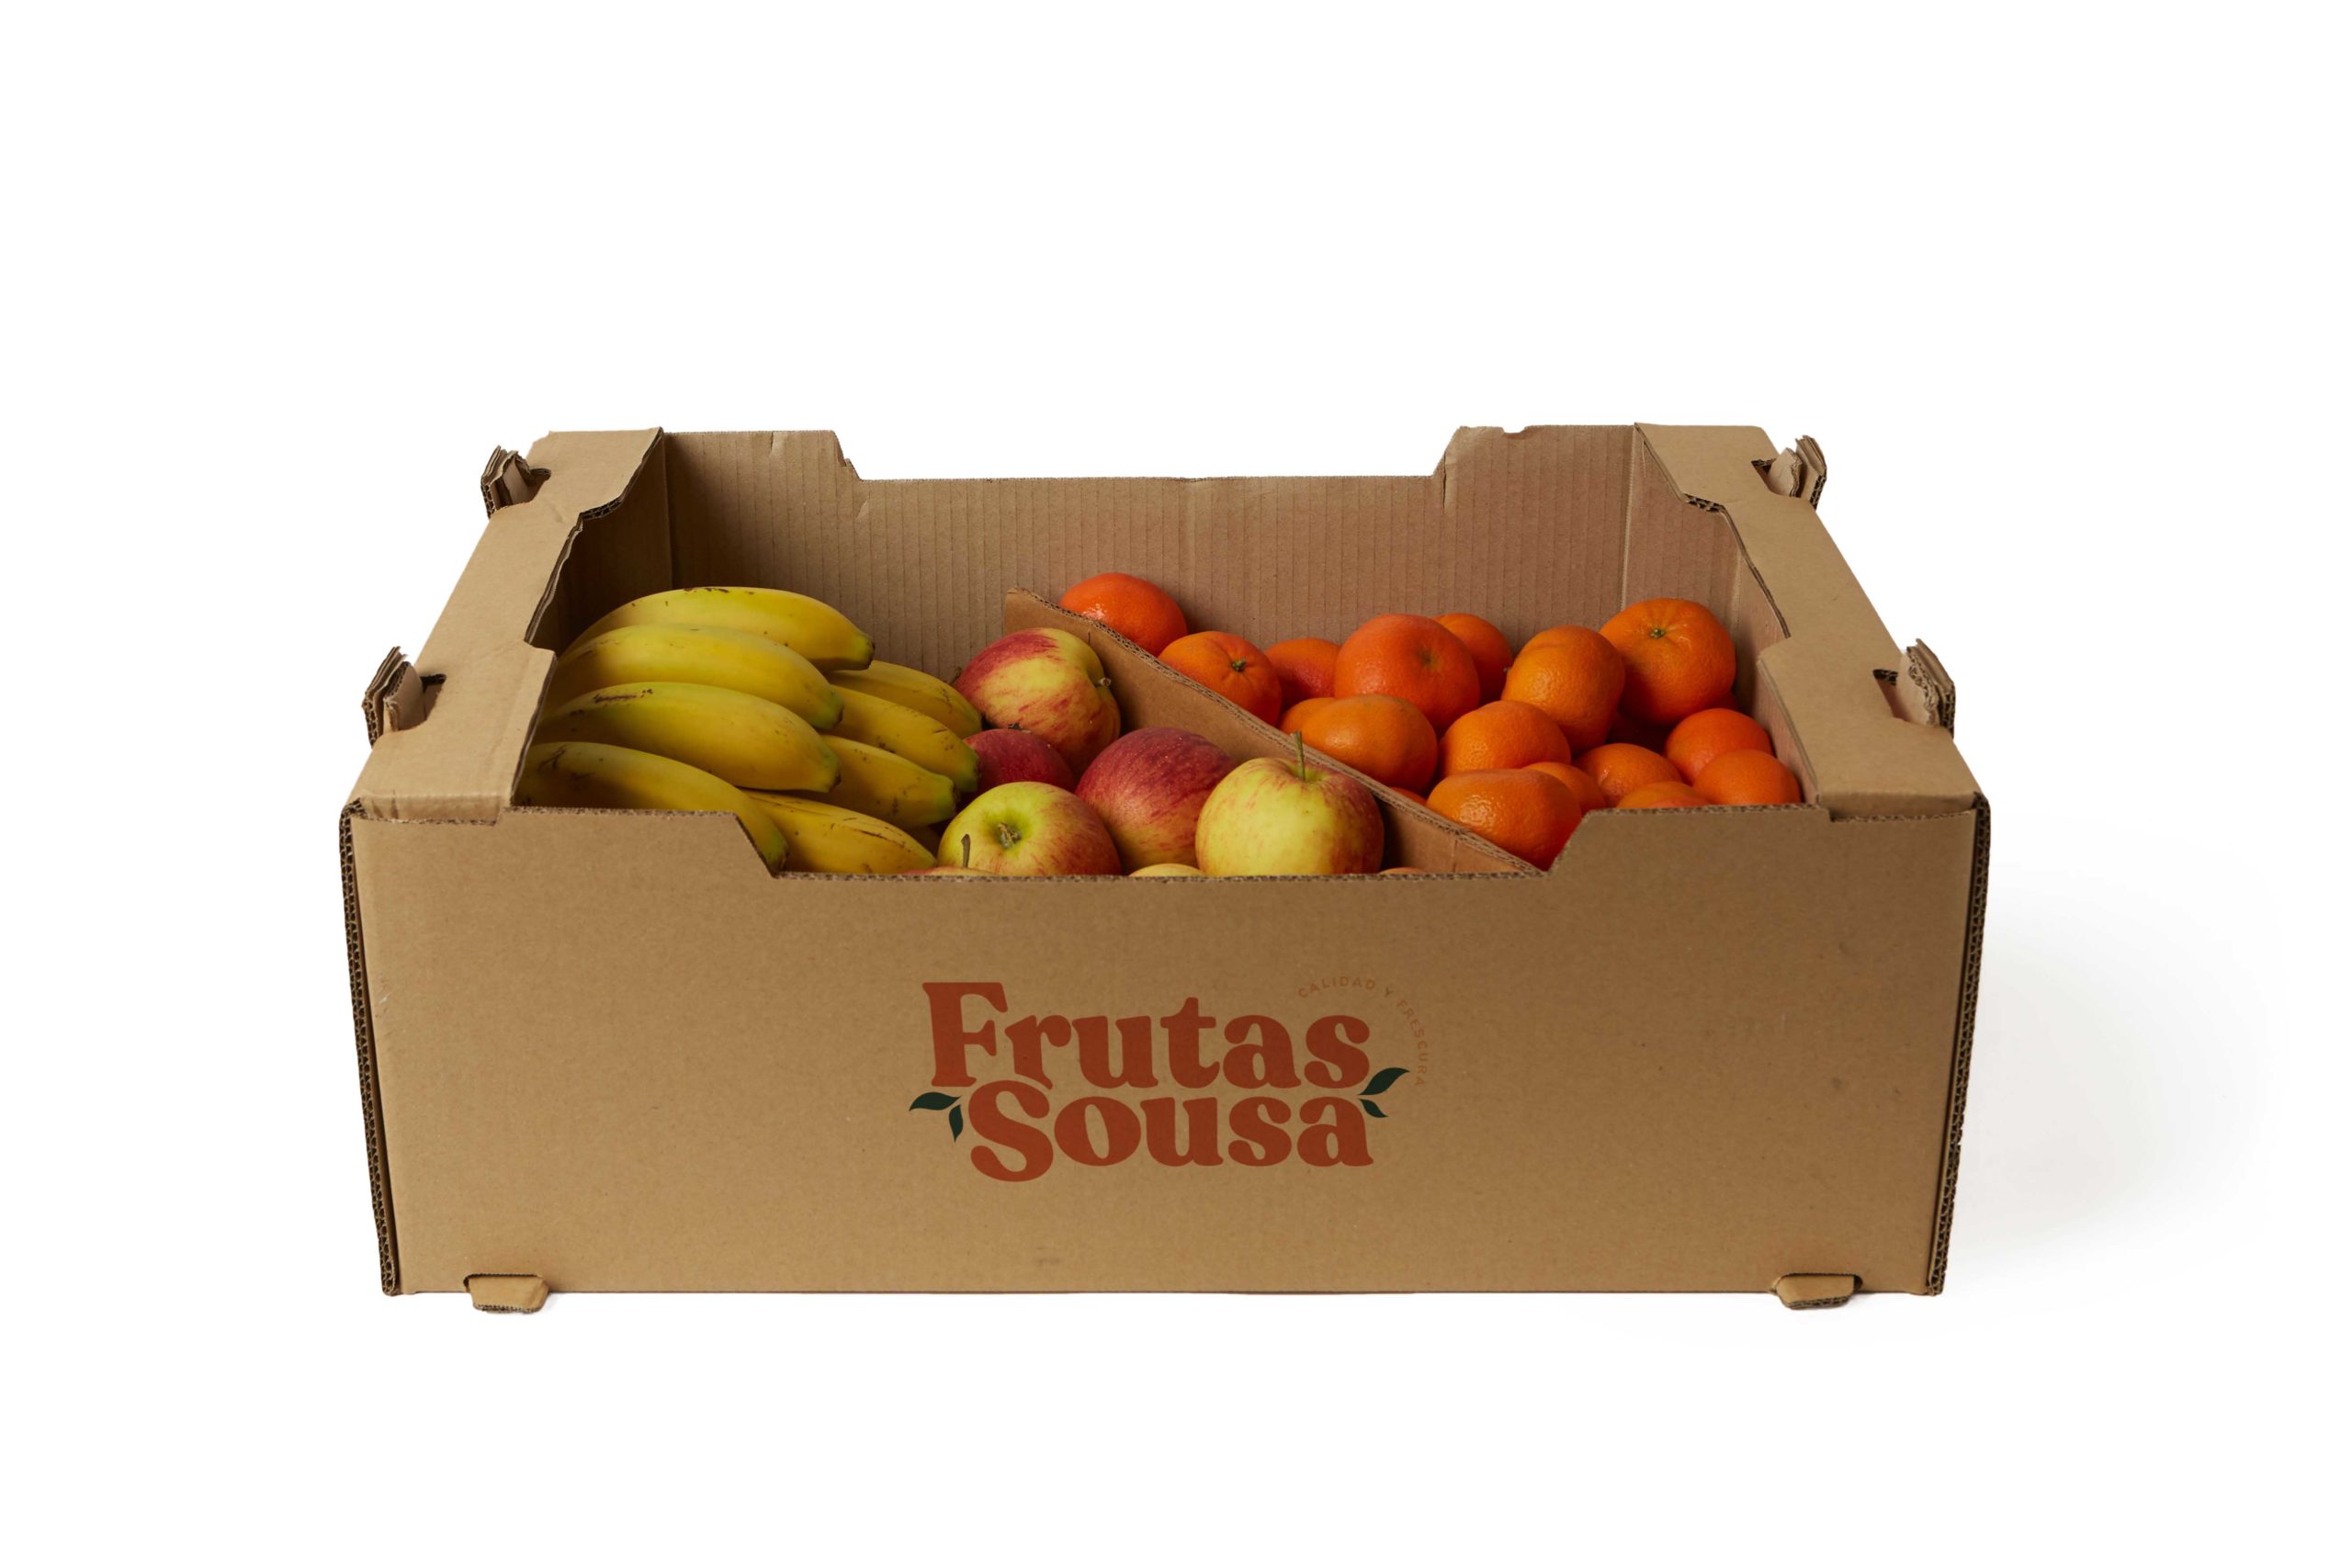 Caja de Fruta con Madarinas, plátanos y manzanas